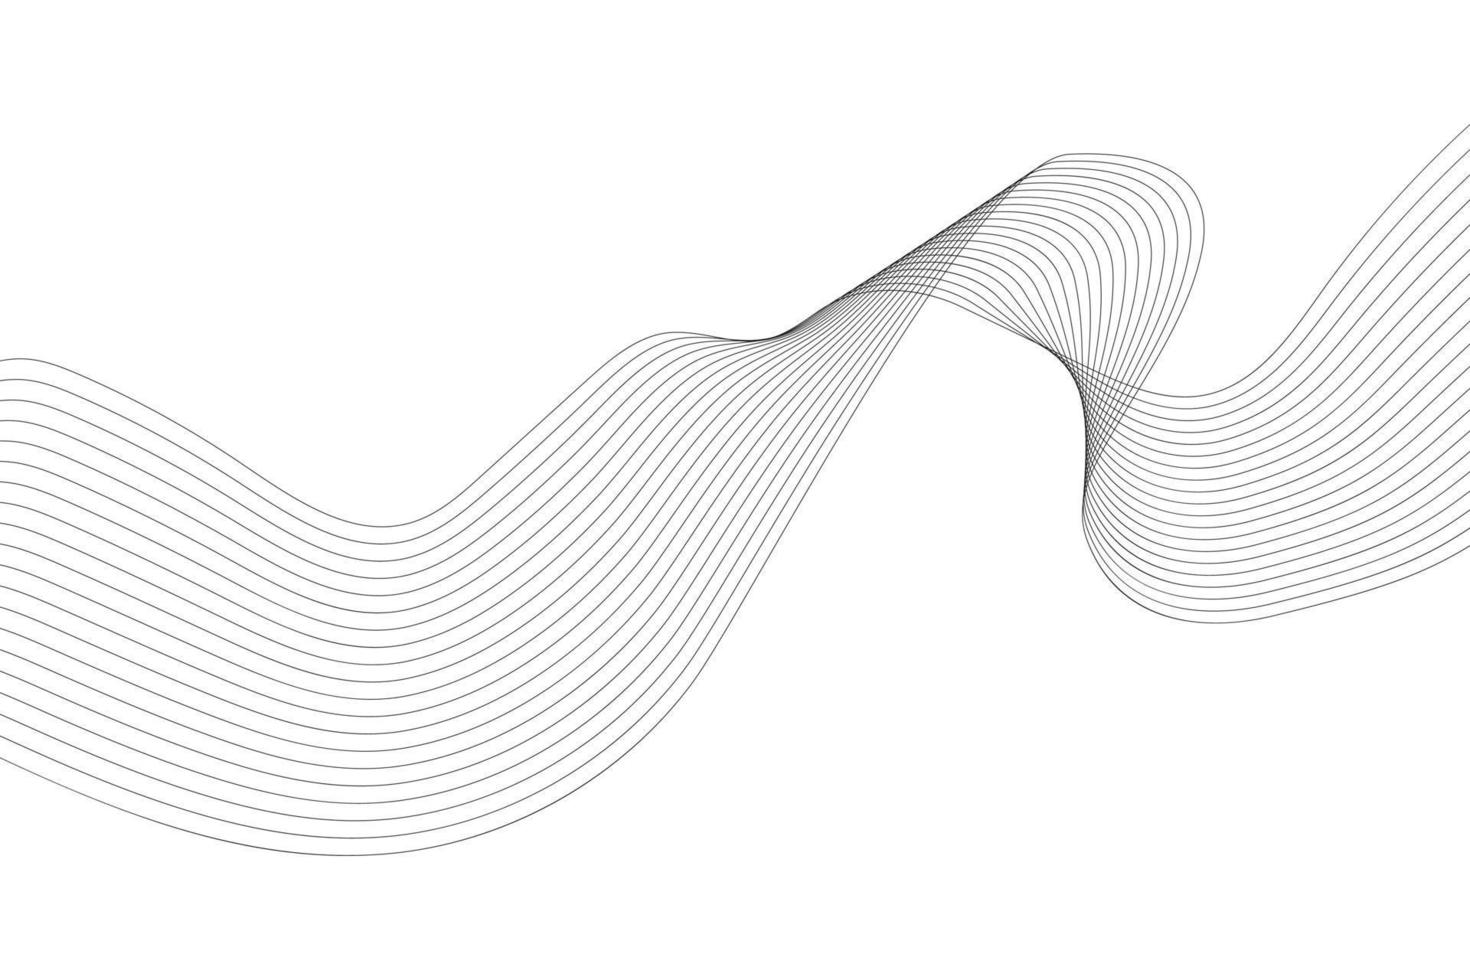 diseño de fondo de línea ondulada de colores modernos. fondo abstracto de curva de onda blanca para negocios, página de inicio, volantes y sitio web vector